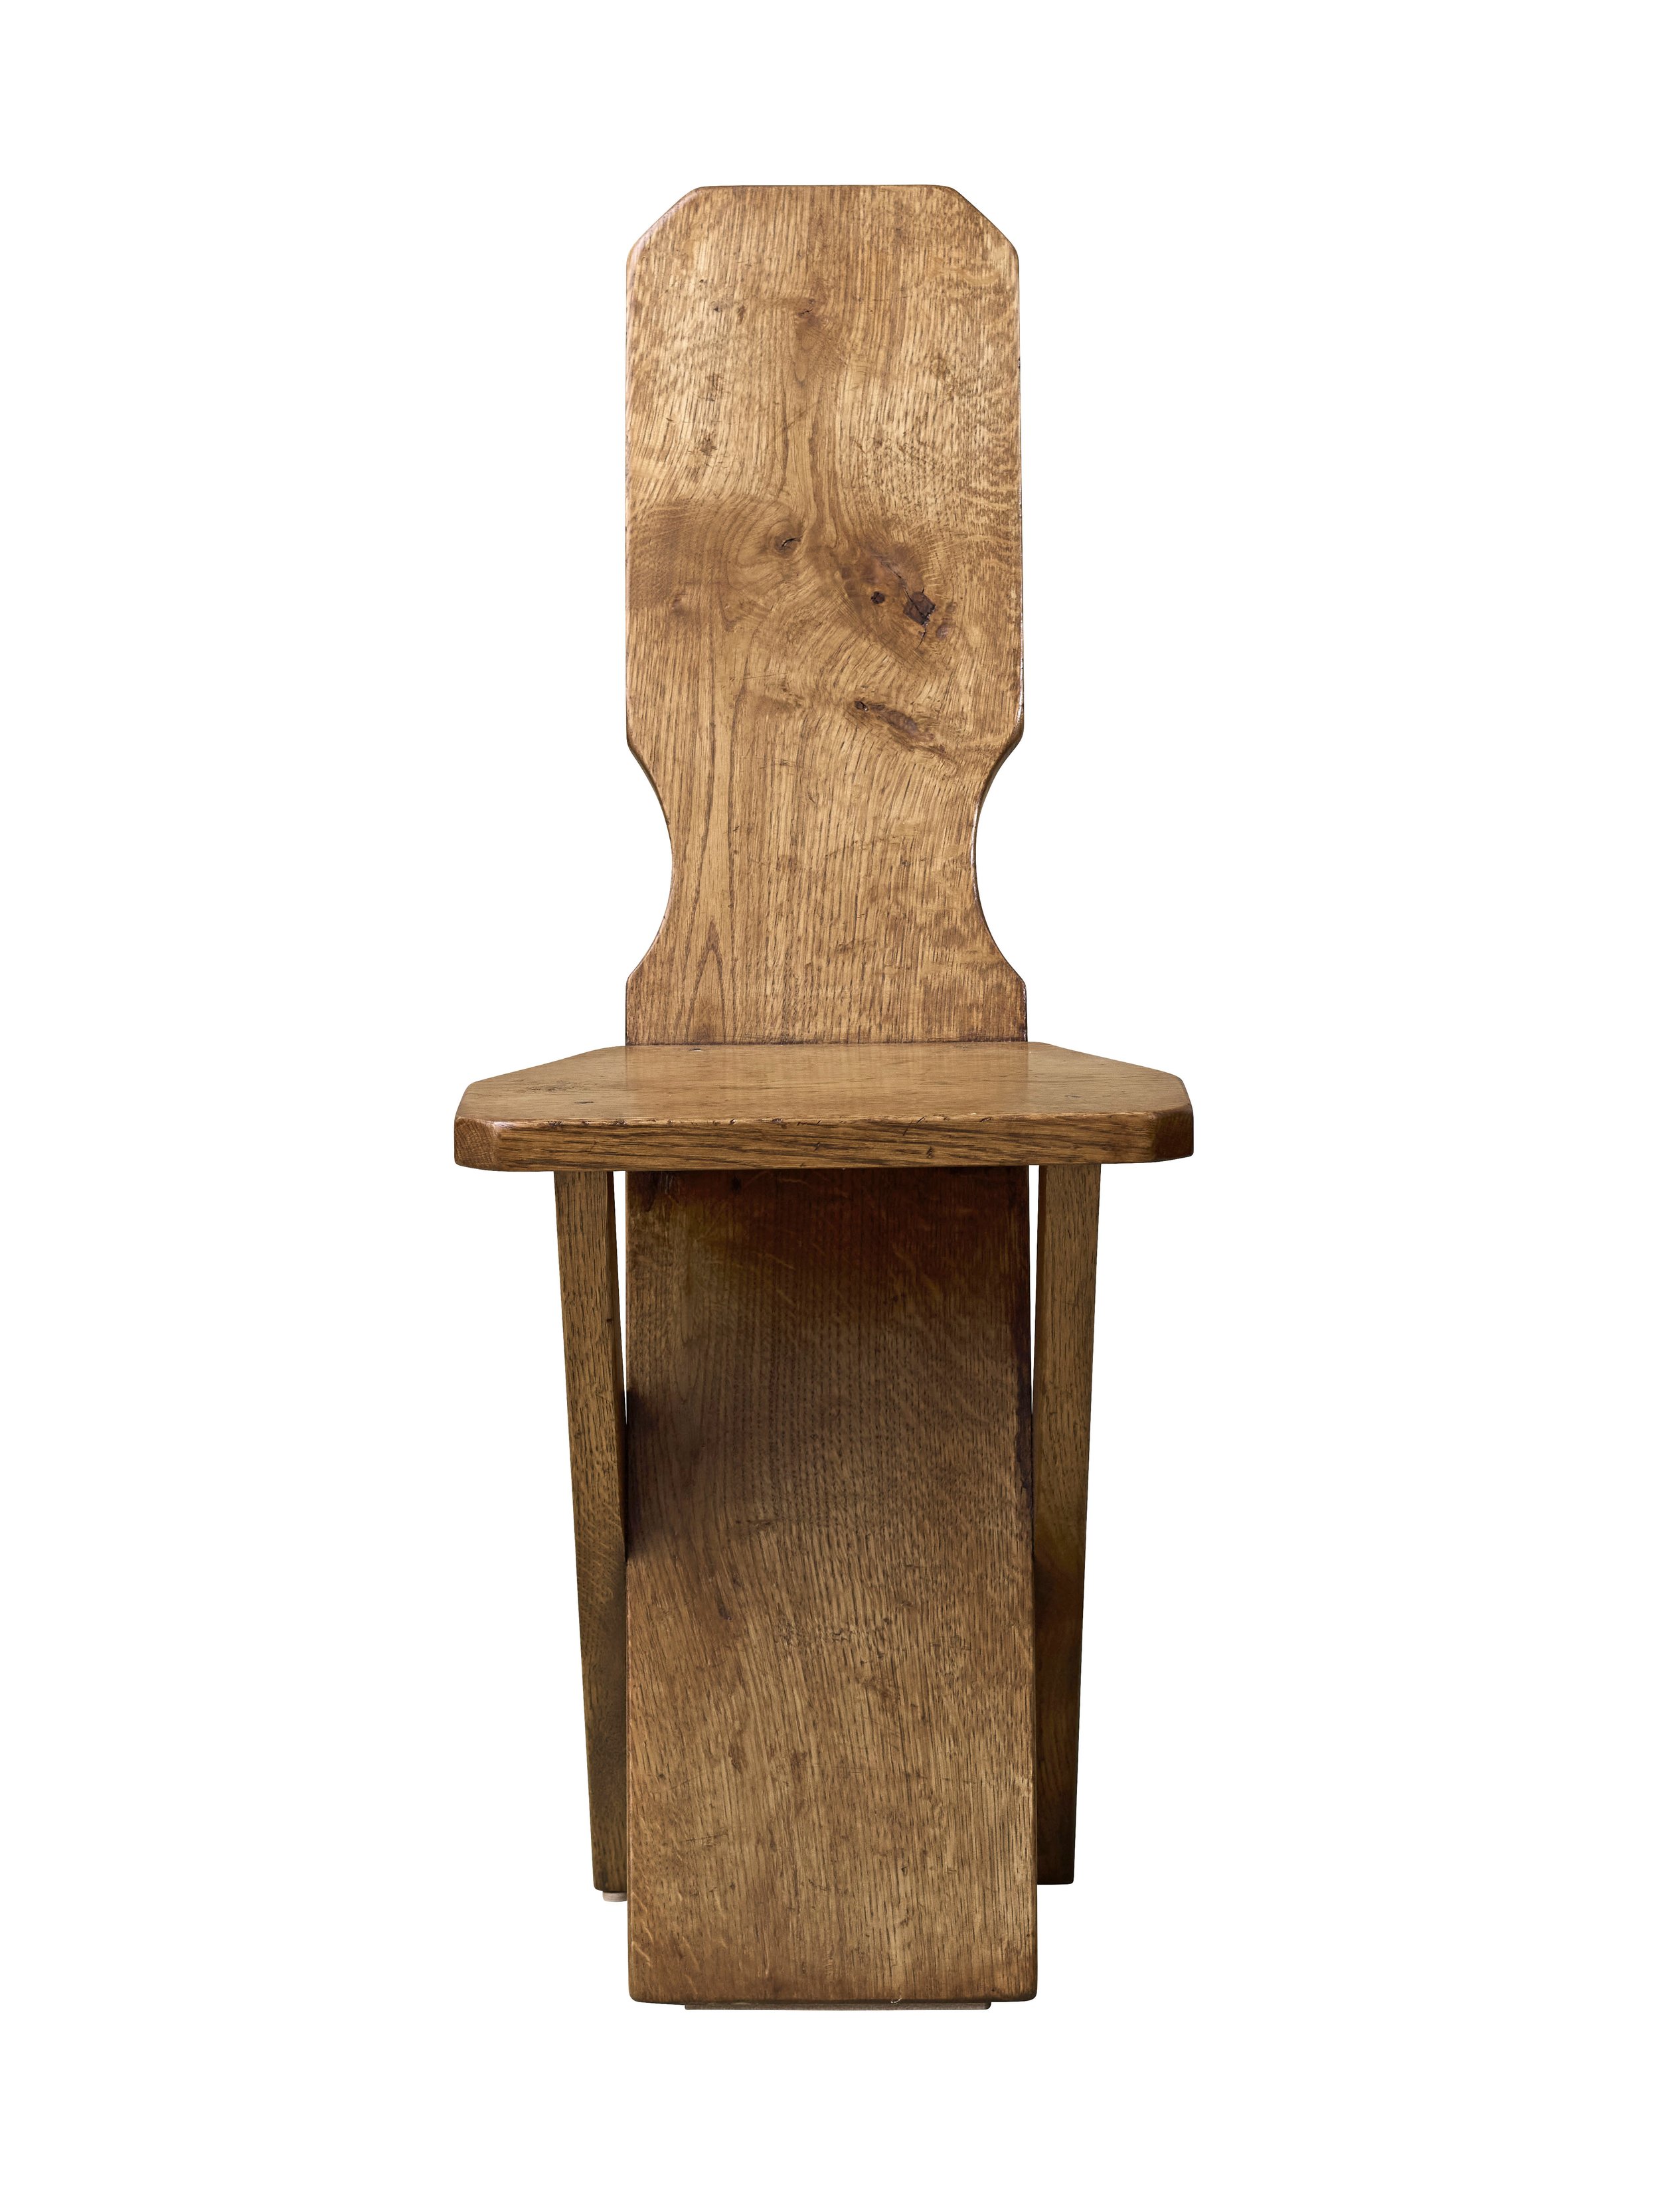 brutalist side chair in oak.jpg